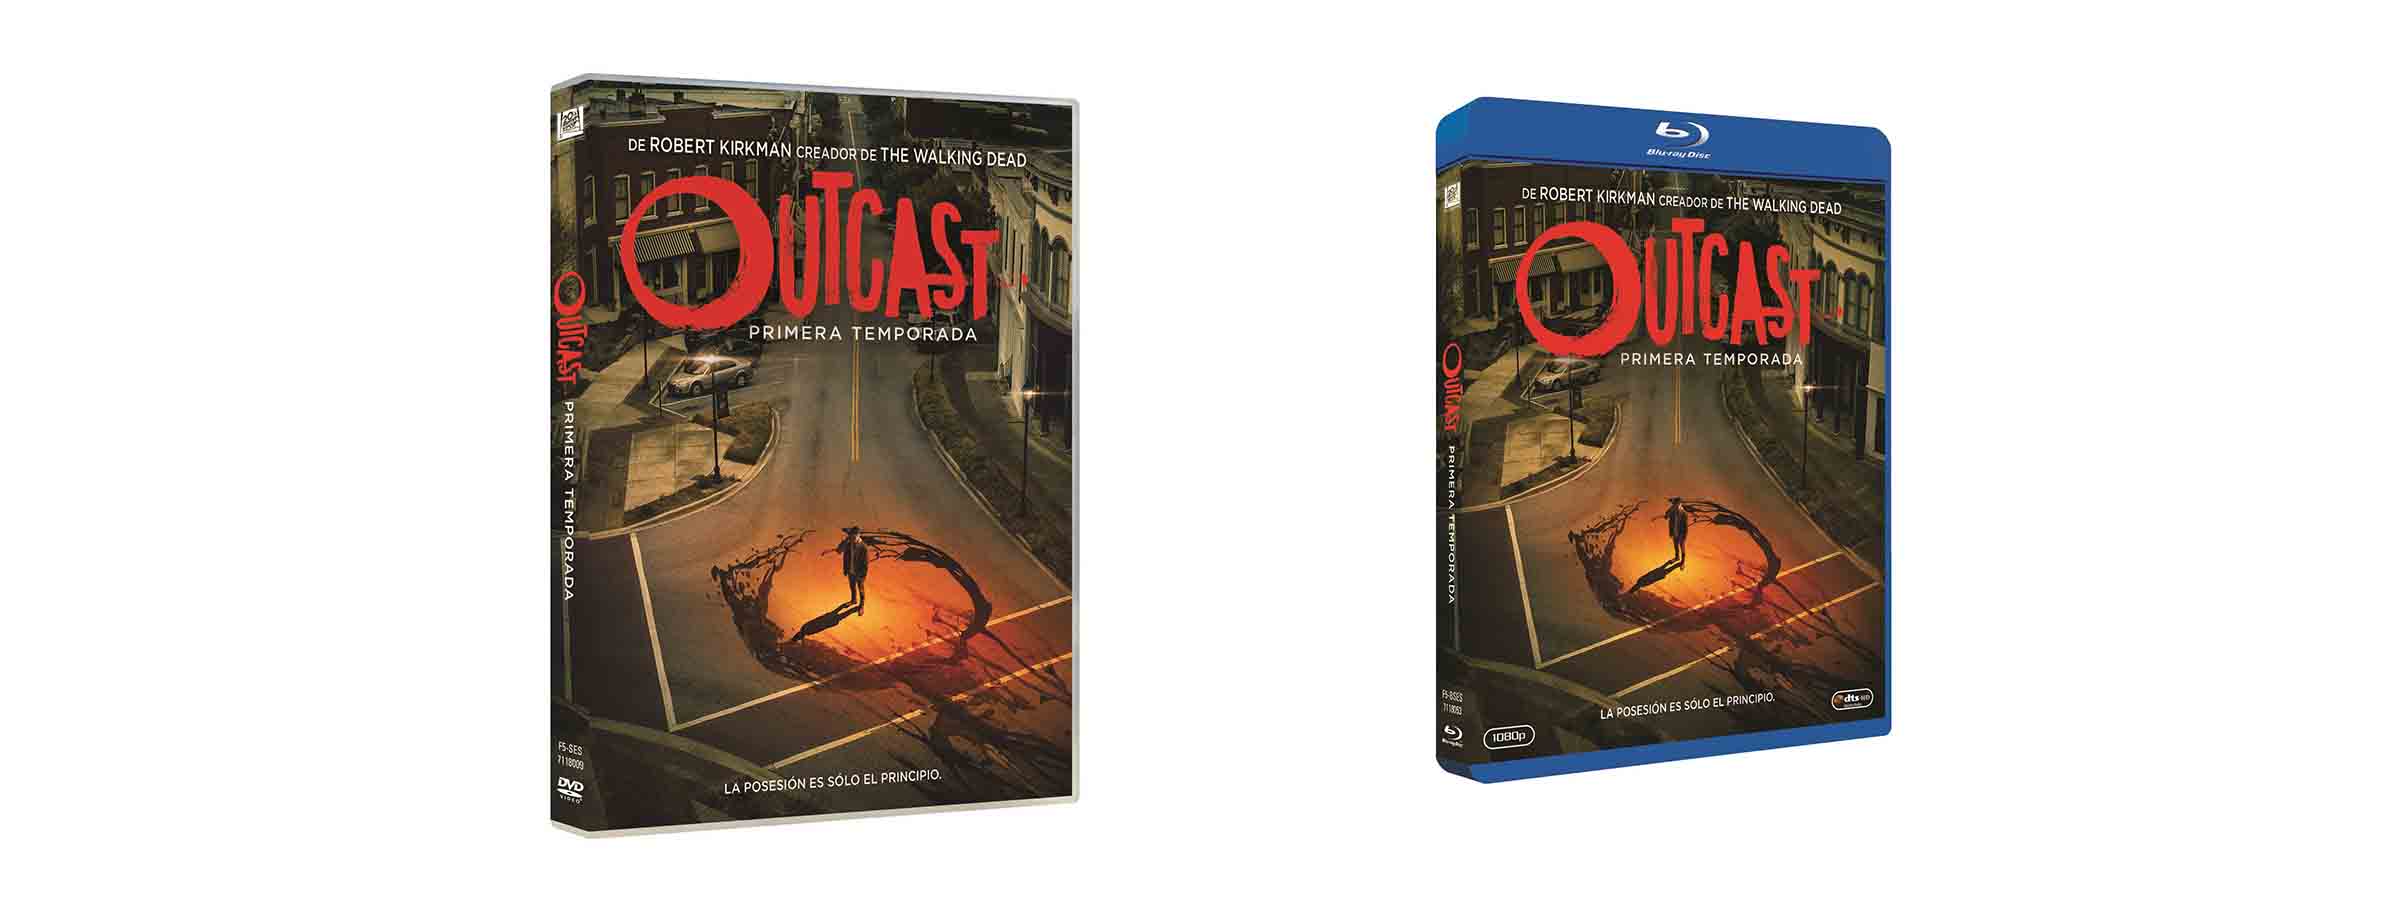 Se lanza en DVD/Blu-ray la primera temporada de ‘Outcast’